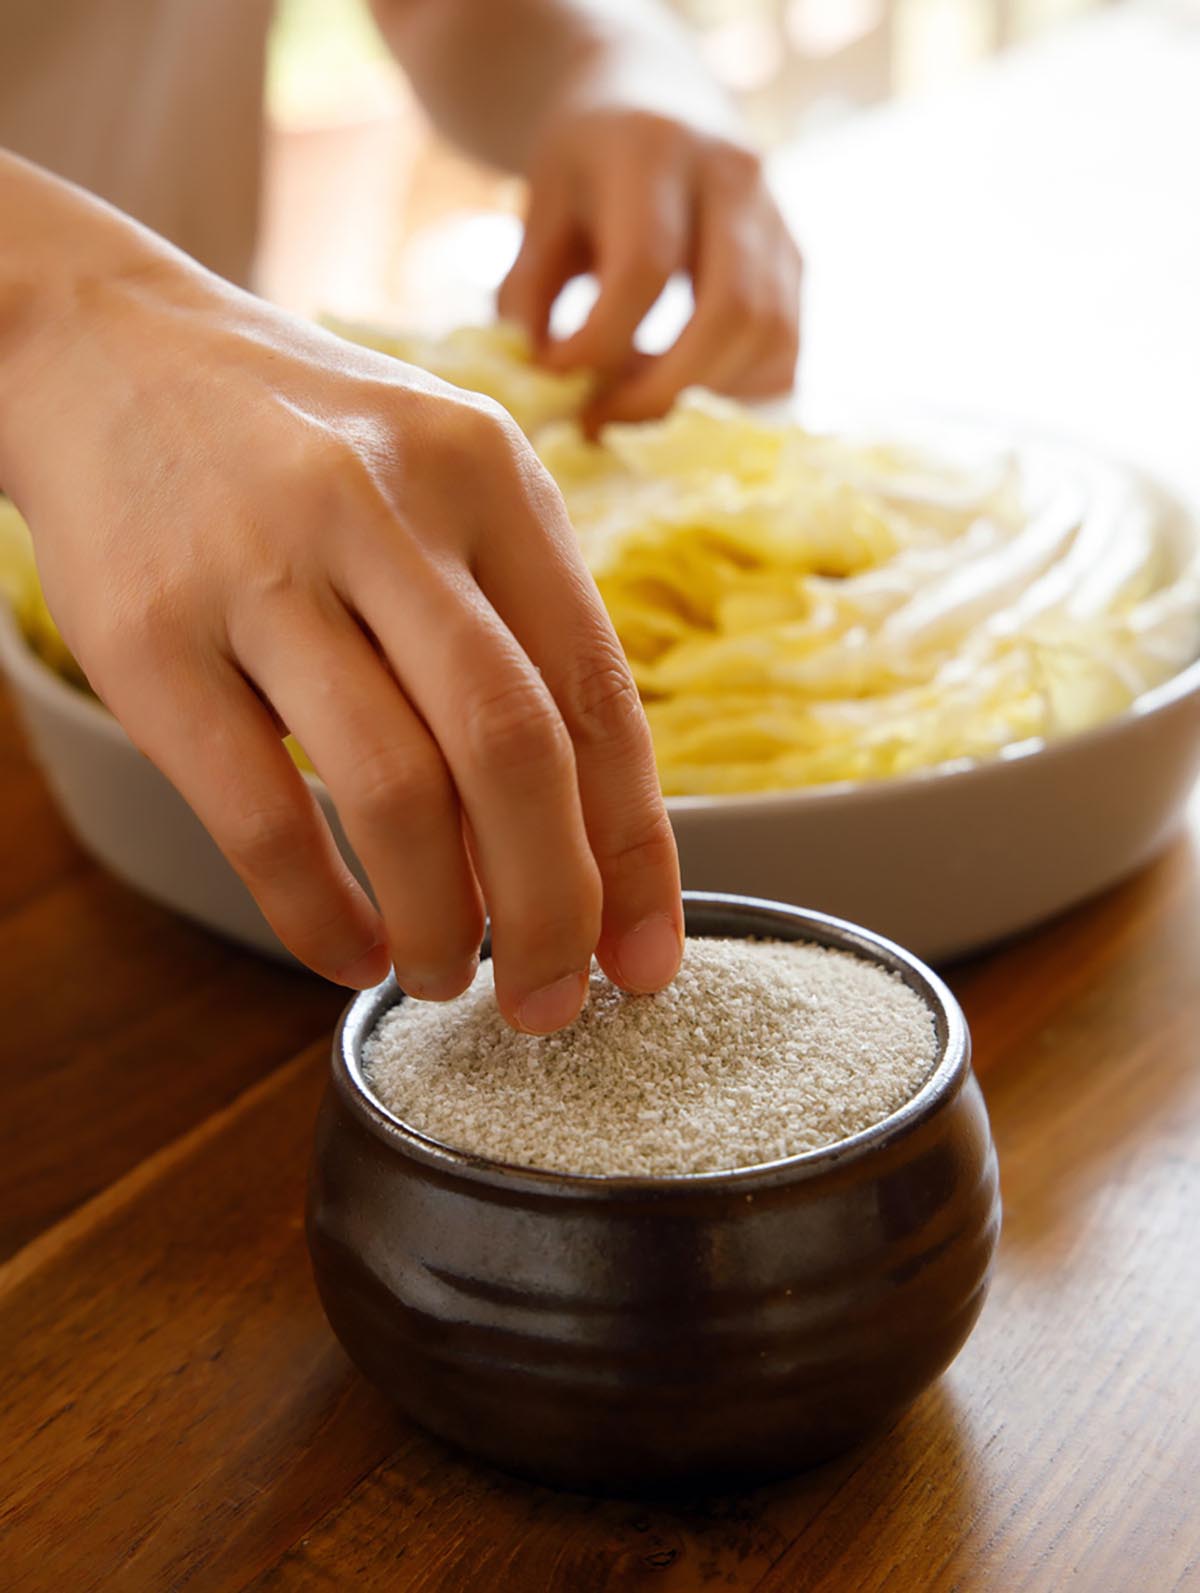 그릇에 소금이 수북히 담아져 있고, 노란배추속에 소금을 넣을려고 손으로 소금을 집고 있다.